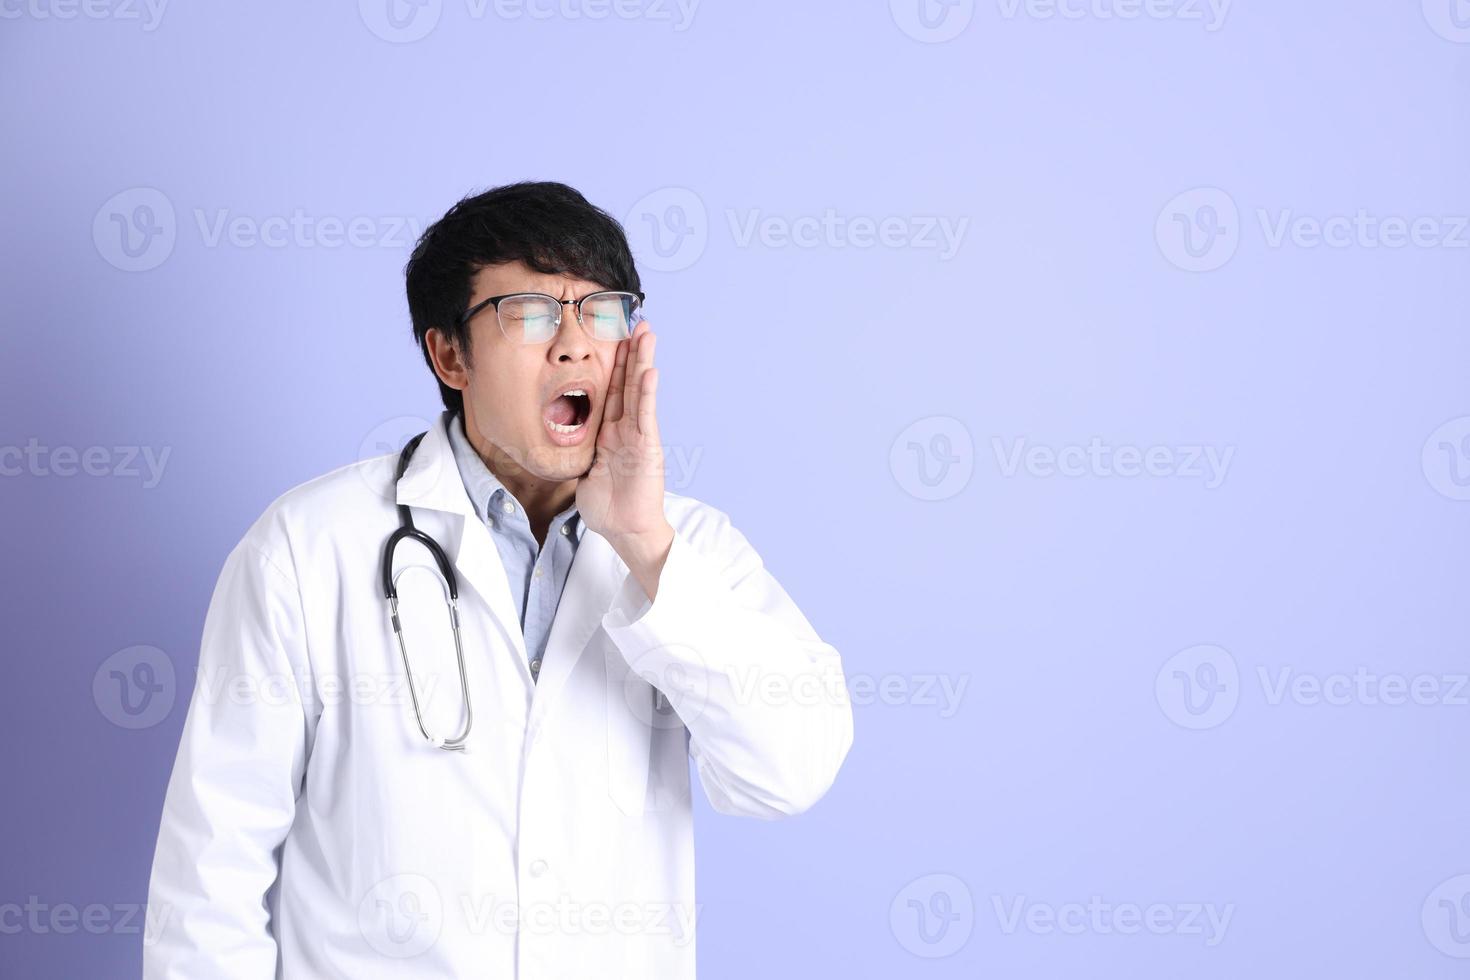 jonge Aziatische arts foto